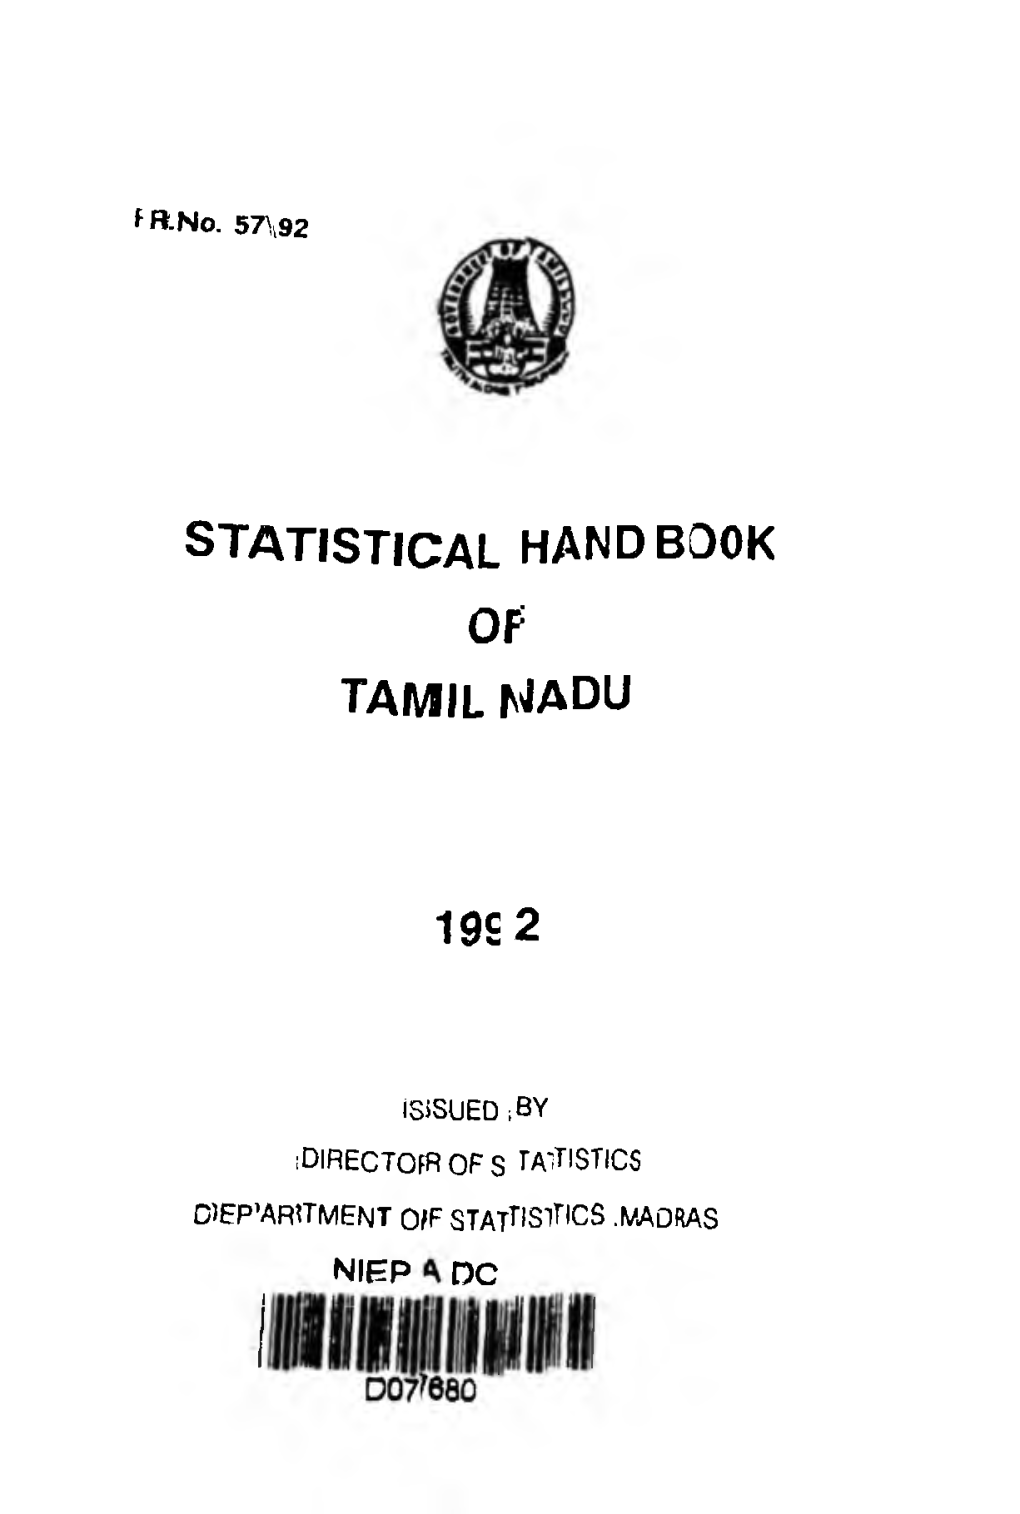 STATISTICAL HANDBOOK of TAMIL NADU